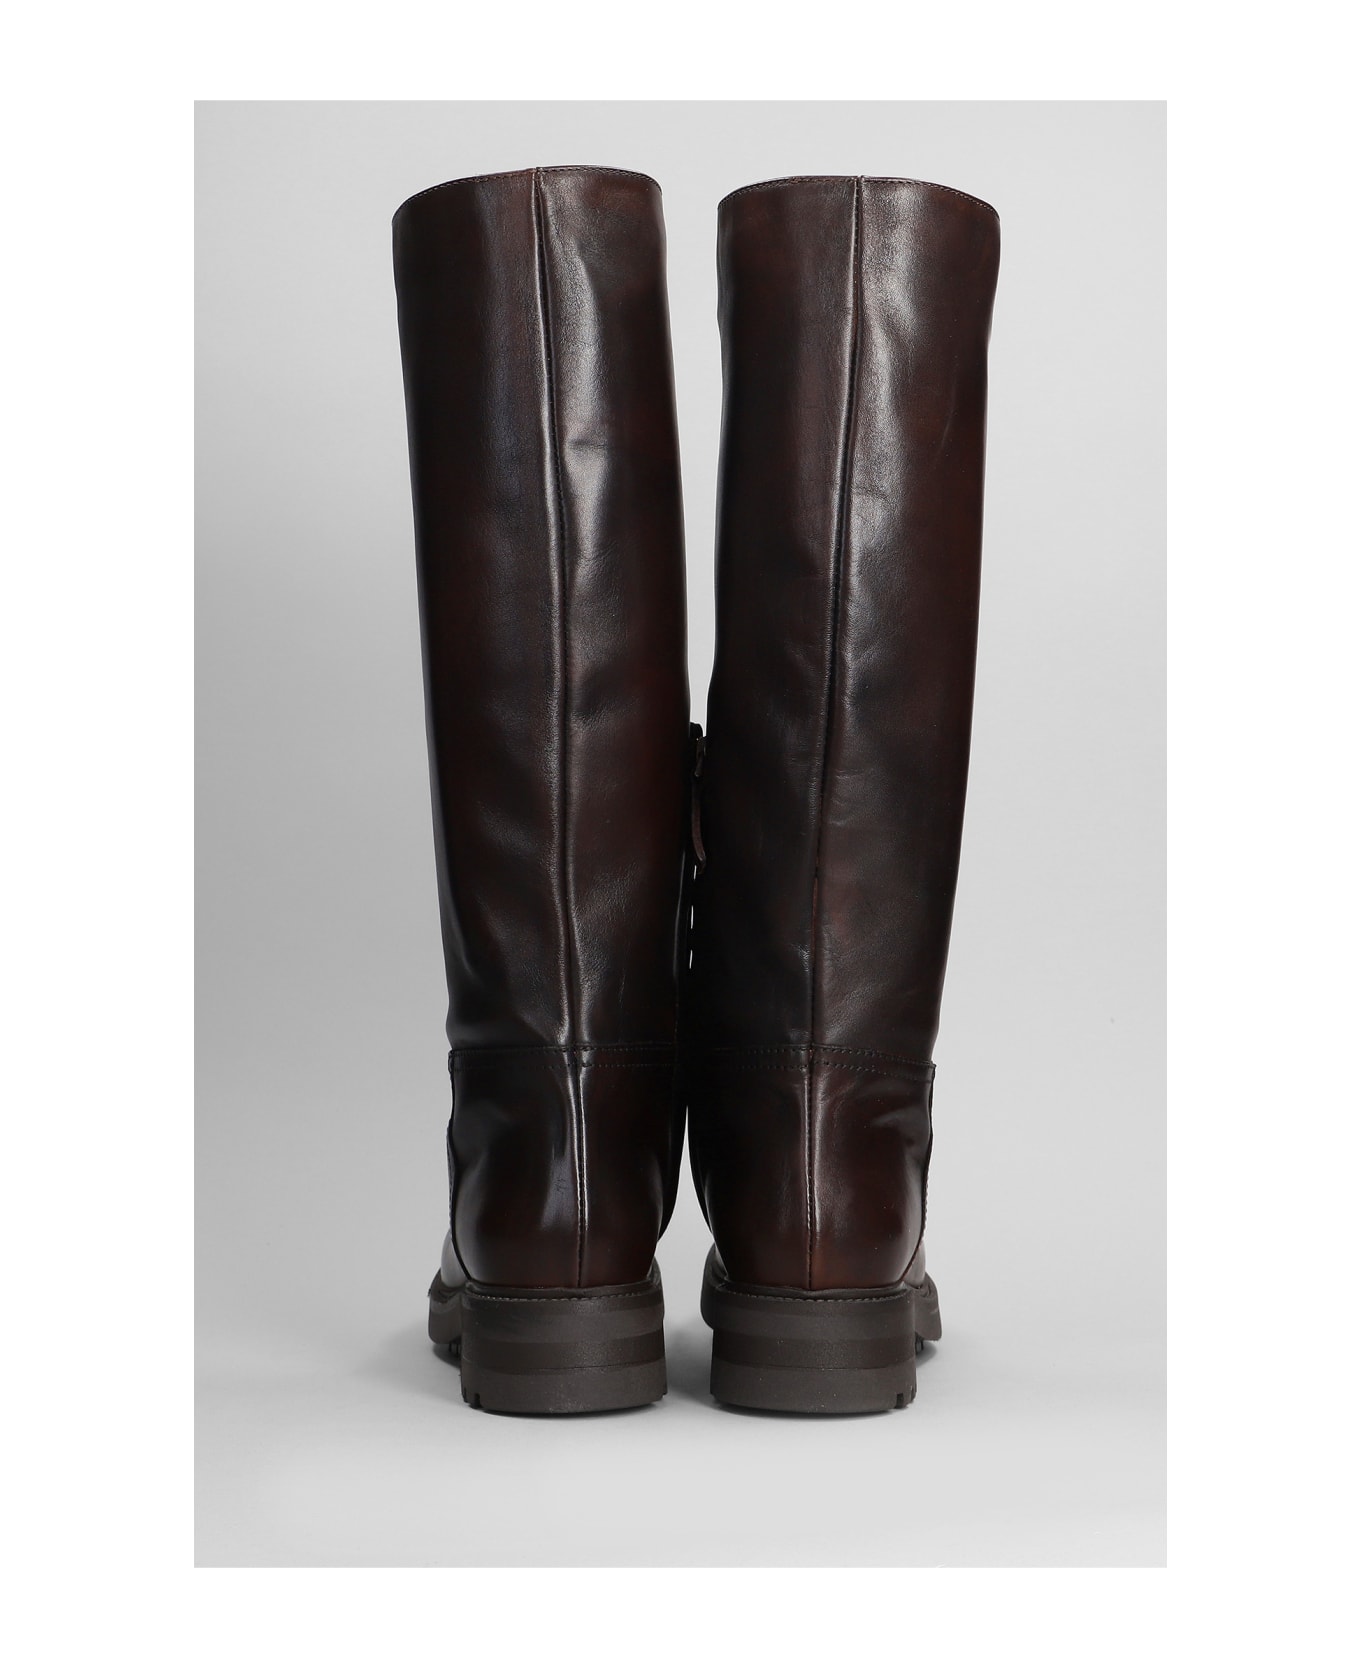 Julie Dee Low Heels Boots In Dark Brown Leather - dark brown